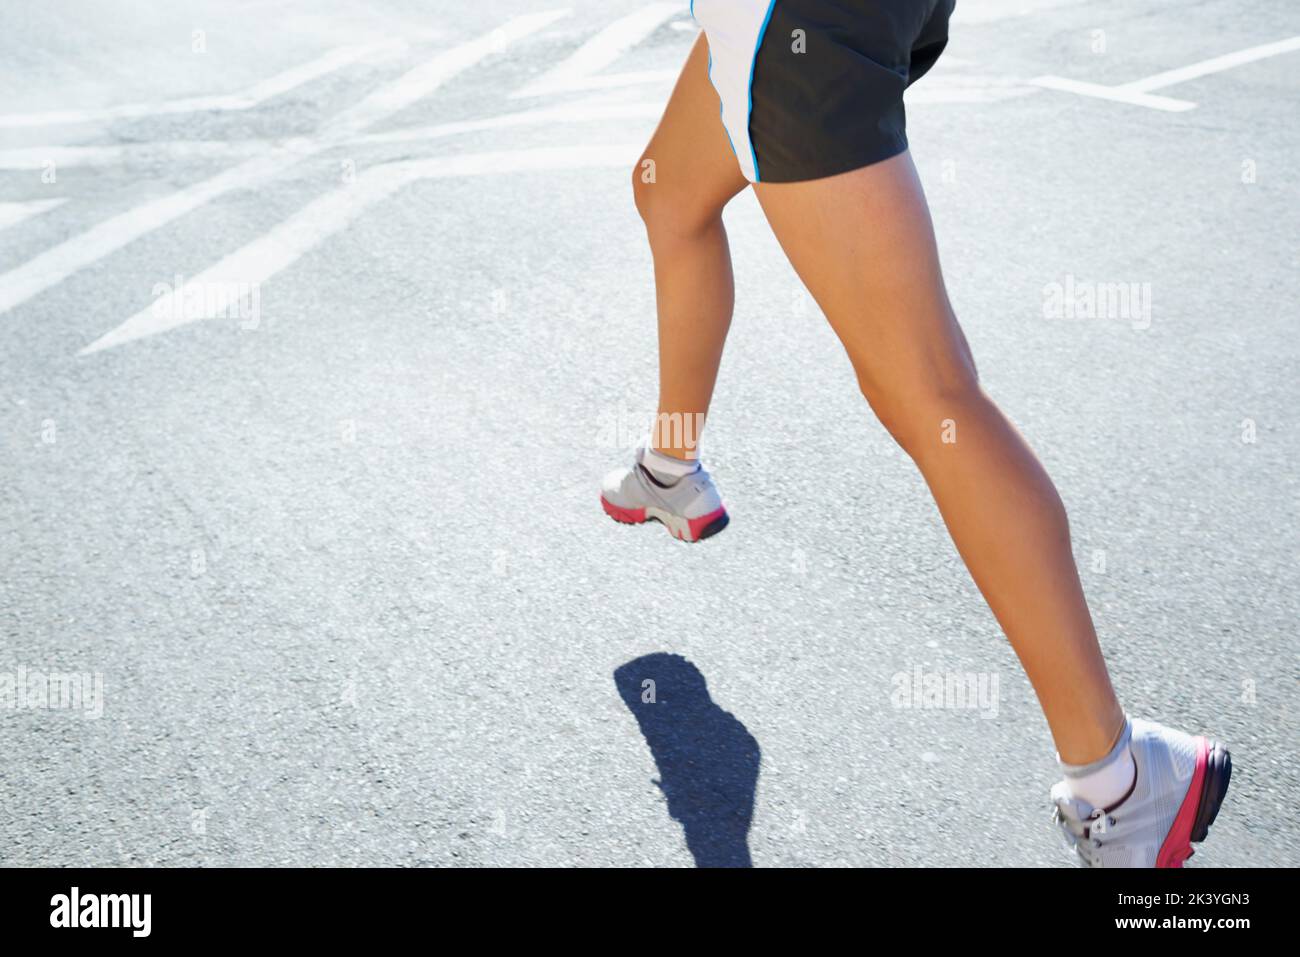 Immer fit ein Schritt nach dem anderen. Eine athletische junge Frau, die draußen läuft. Stockfoto